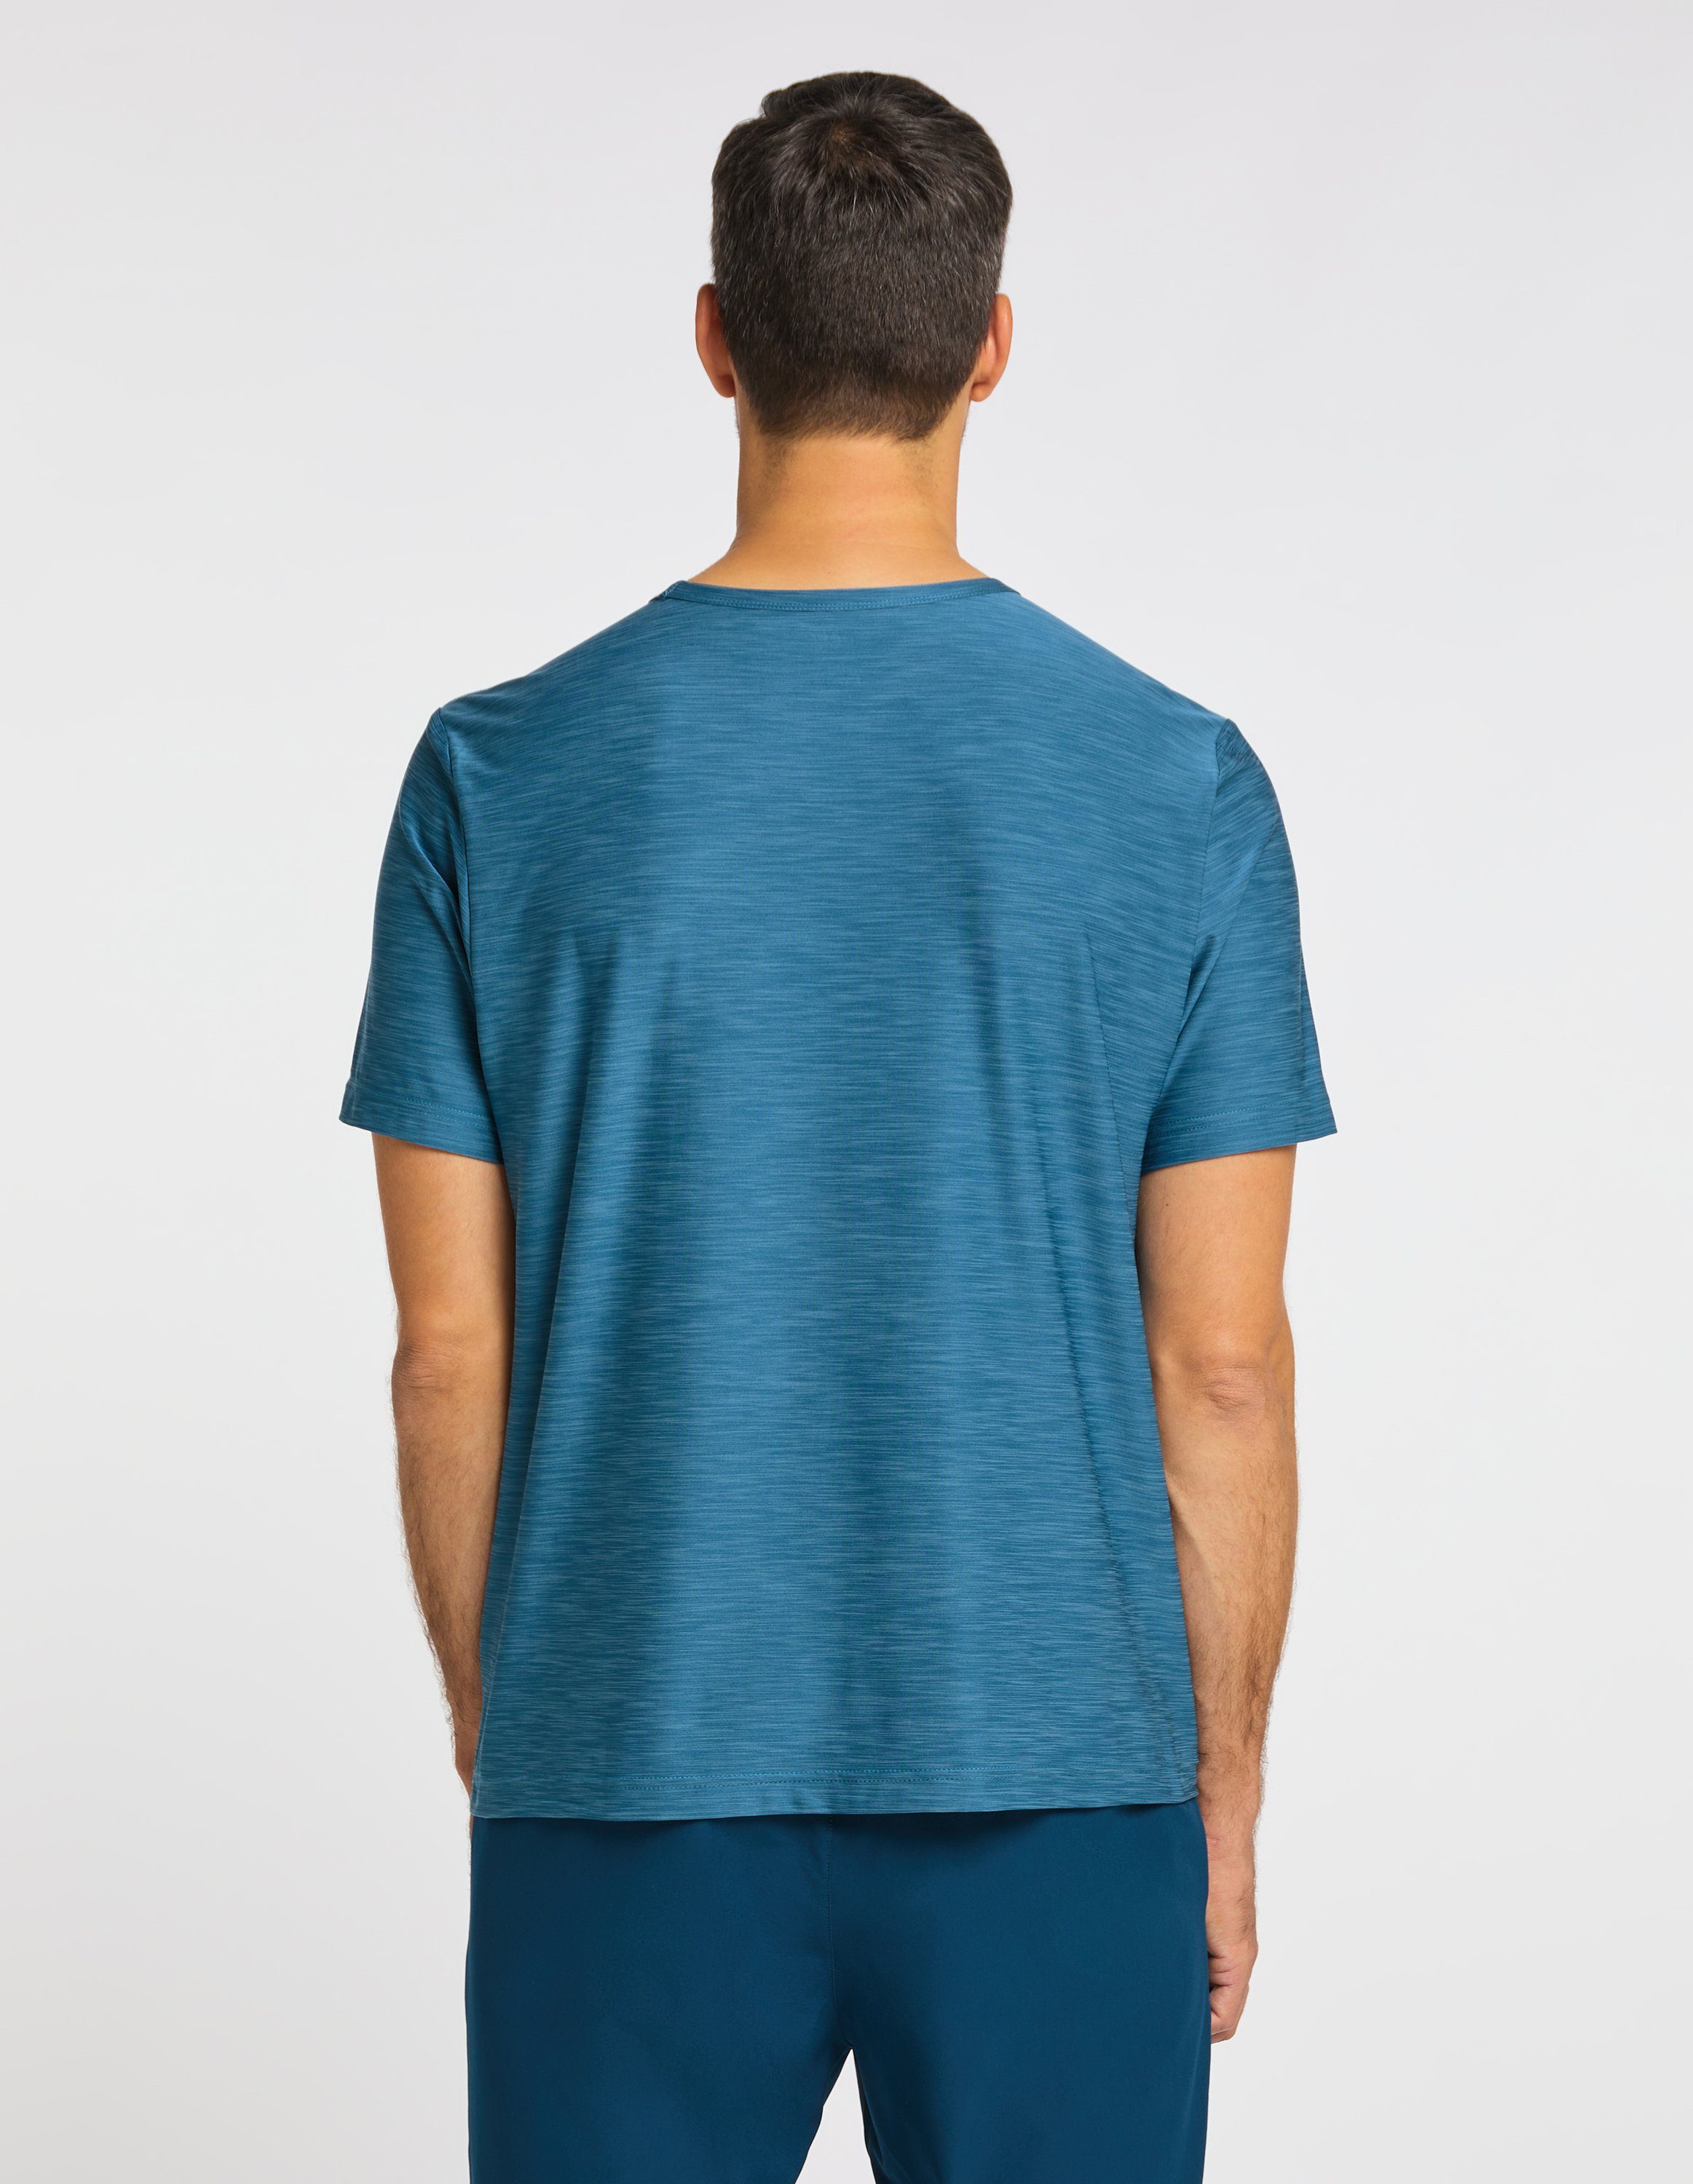 Joy Sportswear T-Shirt T-Shirt blue melange metallic VITUS